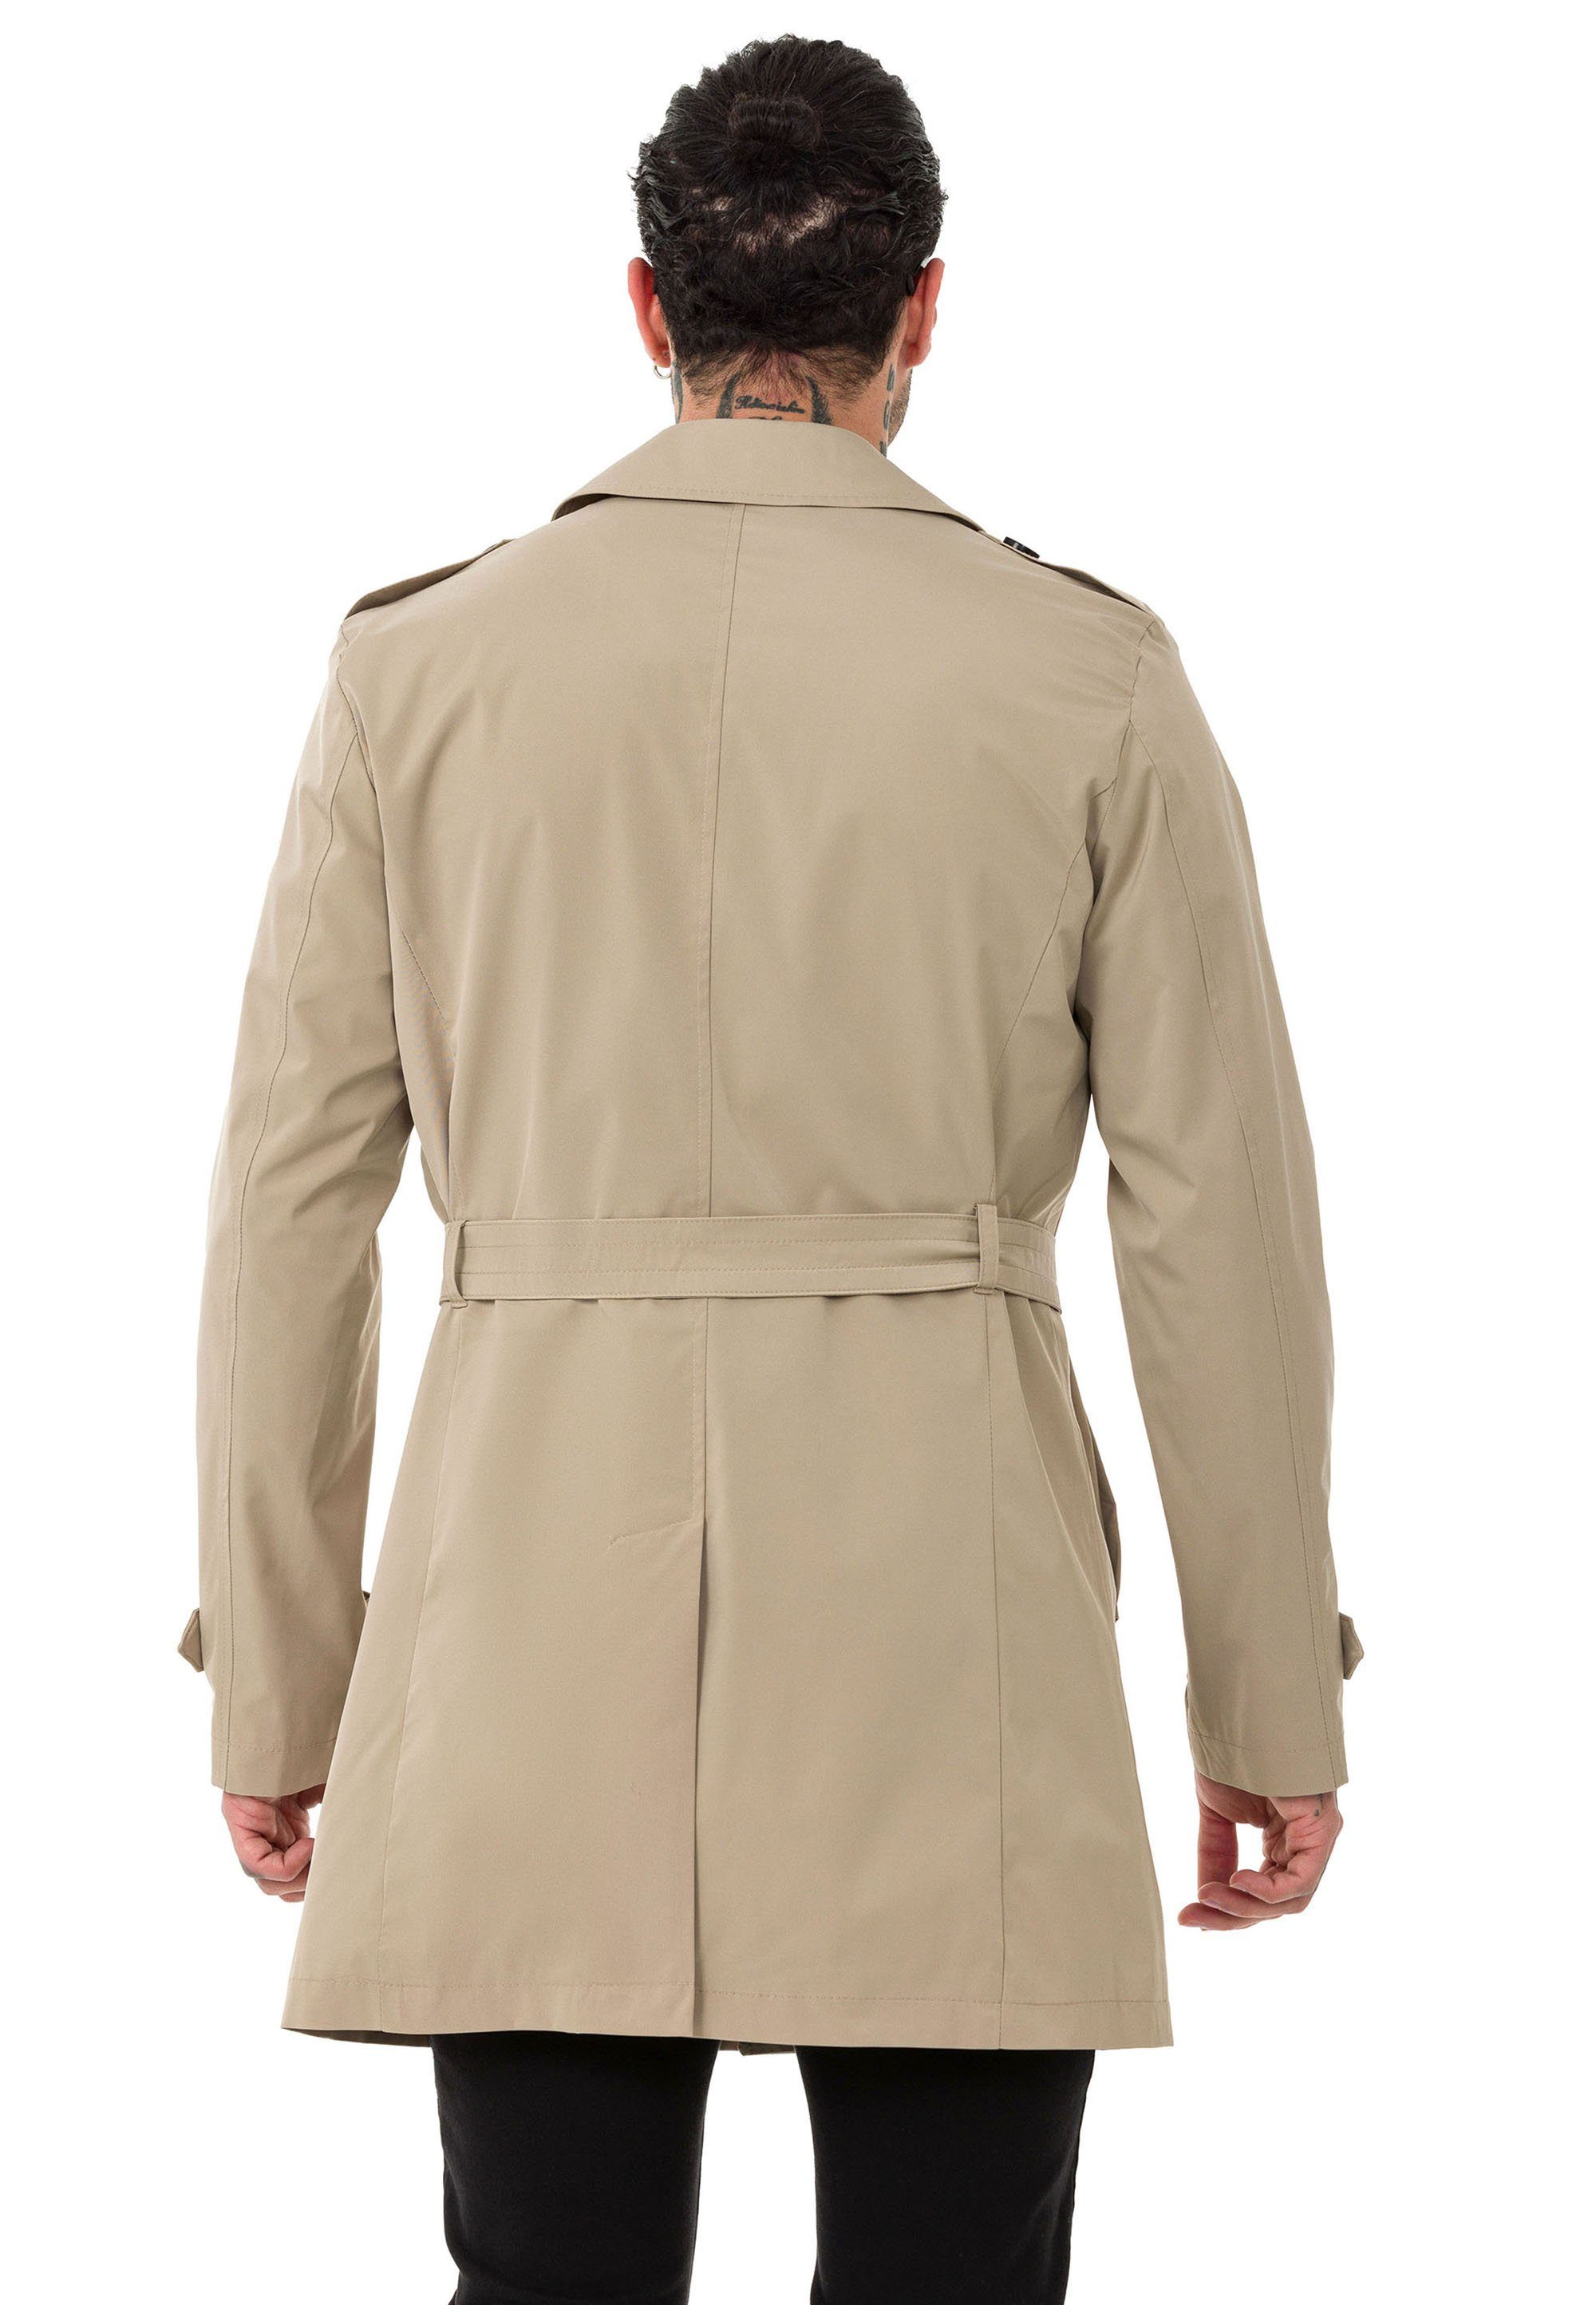 Gürtelschnalle mit RedBridge Beige Mantel Premium Trenchcoat Qualität